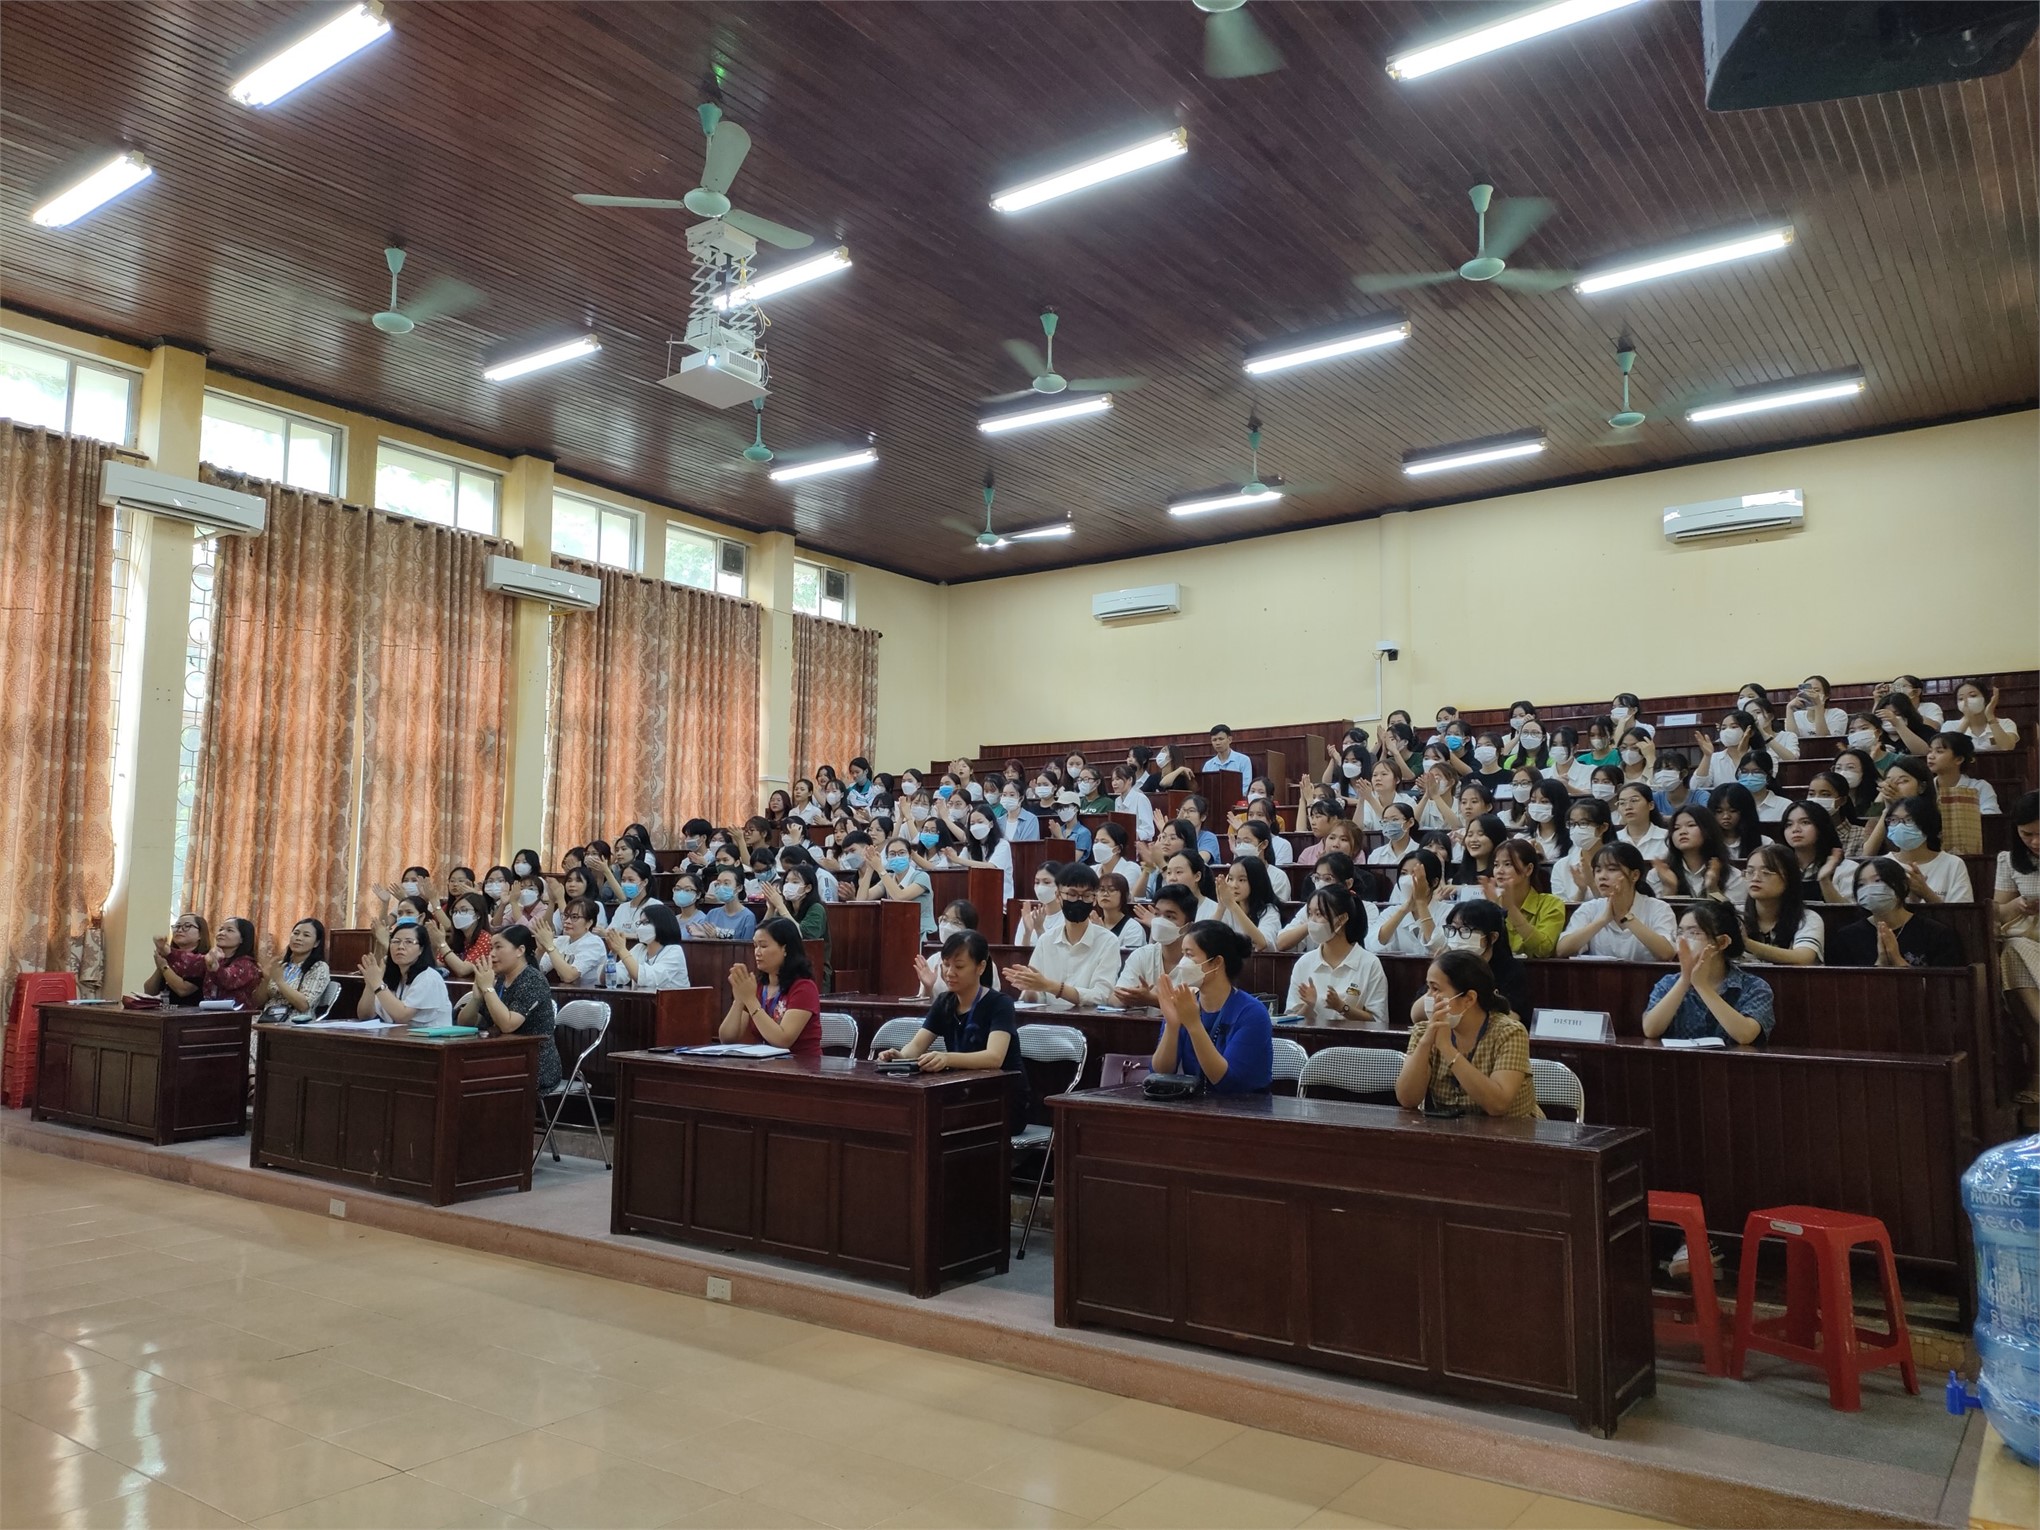 Trường Đại học Hoa Lư tổ chức tuần sinh hoạt công dân - sinh viên năm học 2022 - 2023